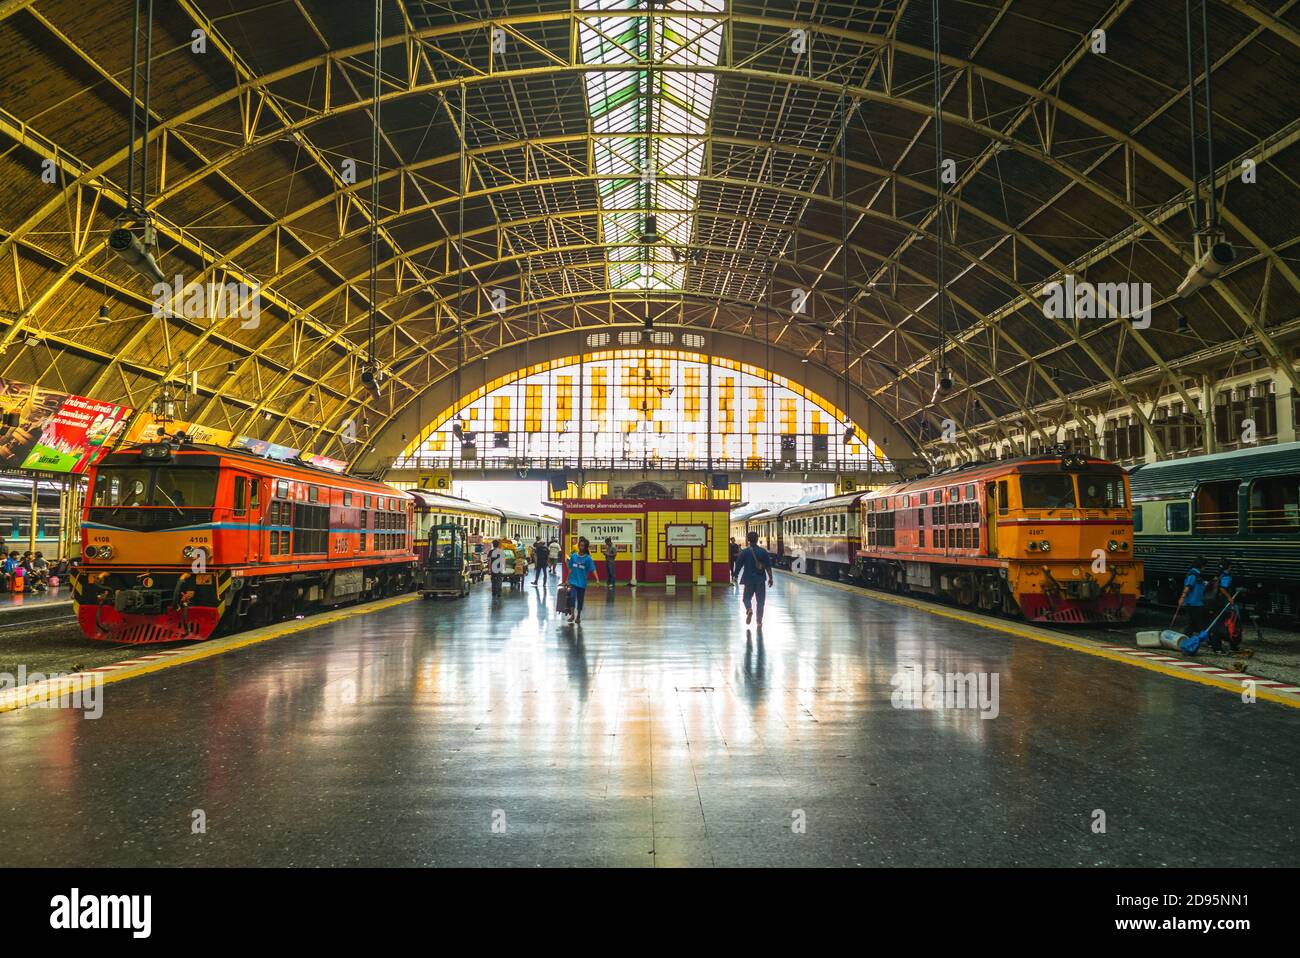 17 settembre 2019: La stazione ferroviaria di Bangkok, nota anche come stazione di hua lamphong, è la stazione ferroviaria principale di bangkok, thailandia. E' stato aperto nel 25 Giugno 19 Foto Stock